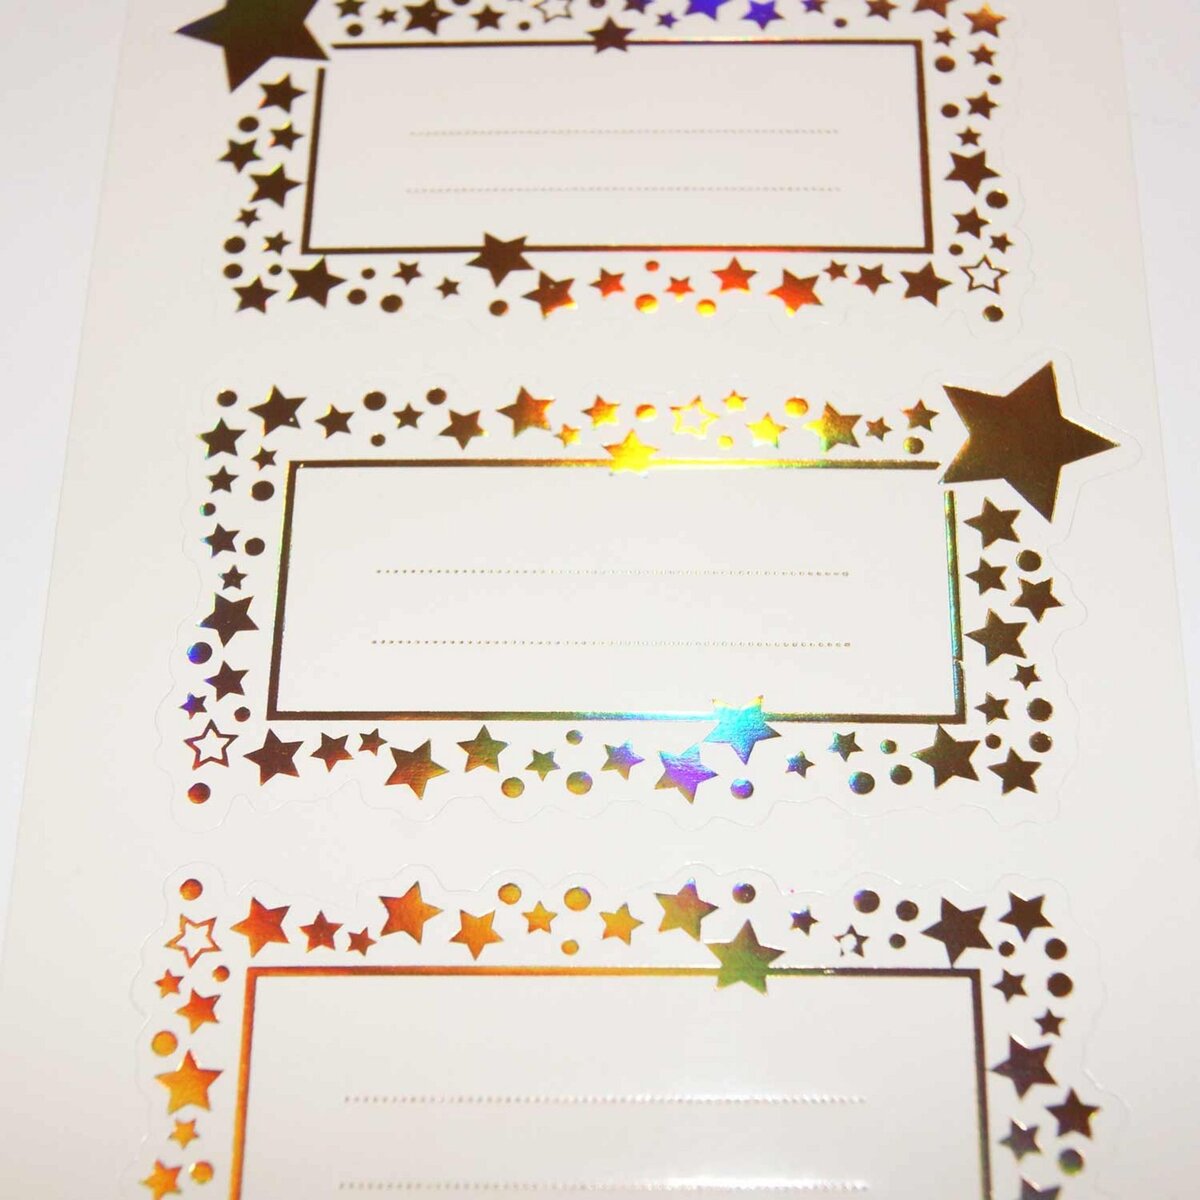  12 étiquettes adhésives de Noël - Étoiles dorées iridescentes